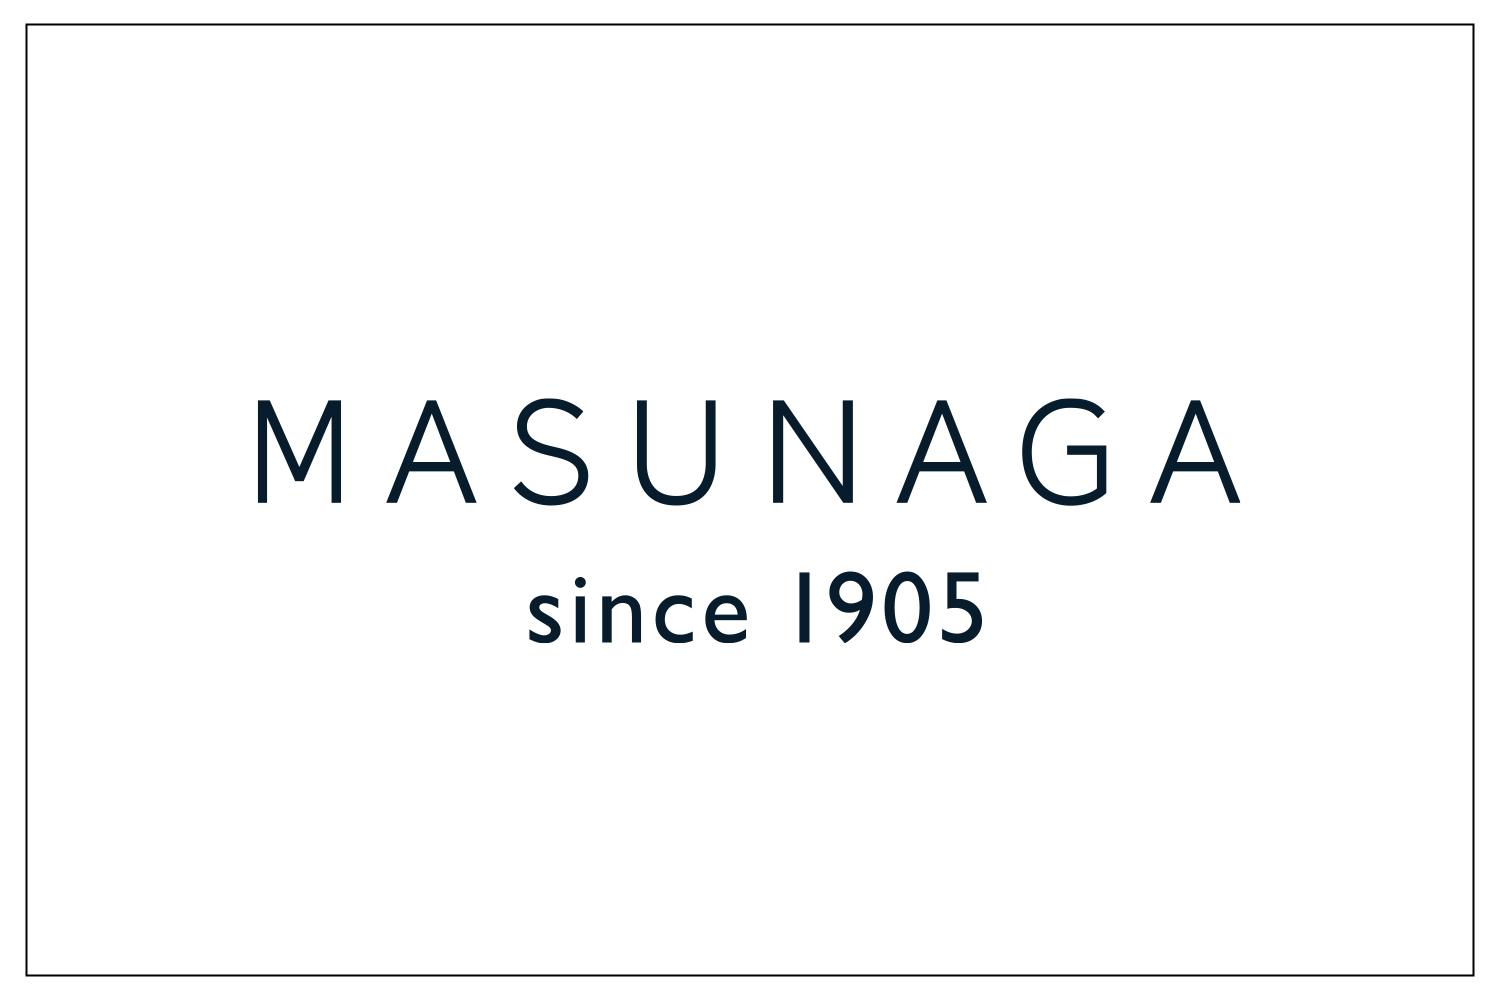 MASUNAGA_LOGO_1500